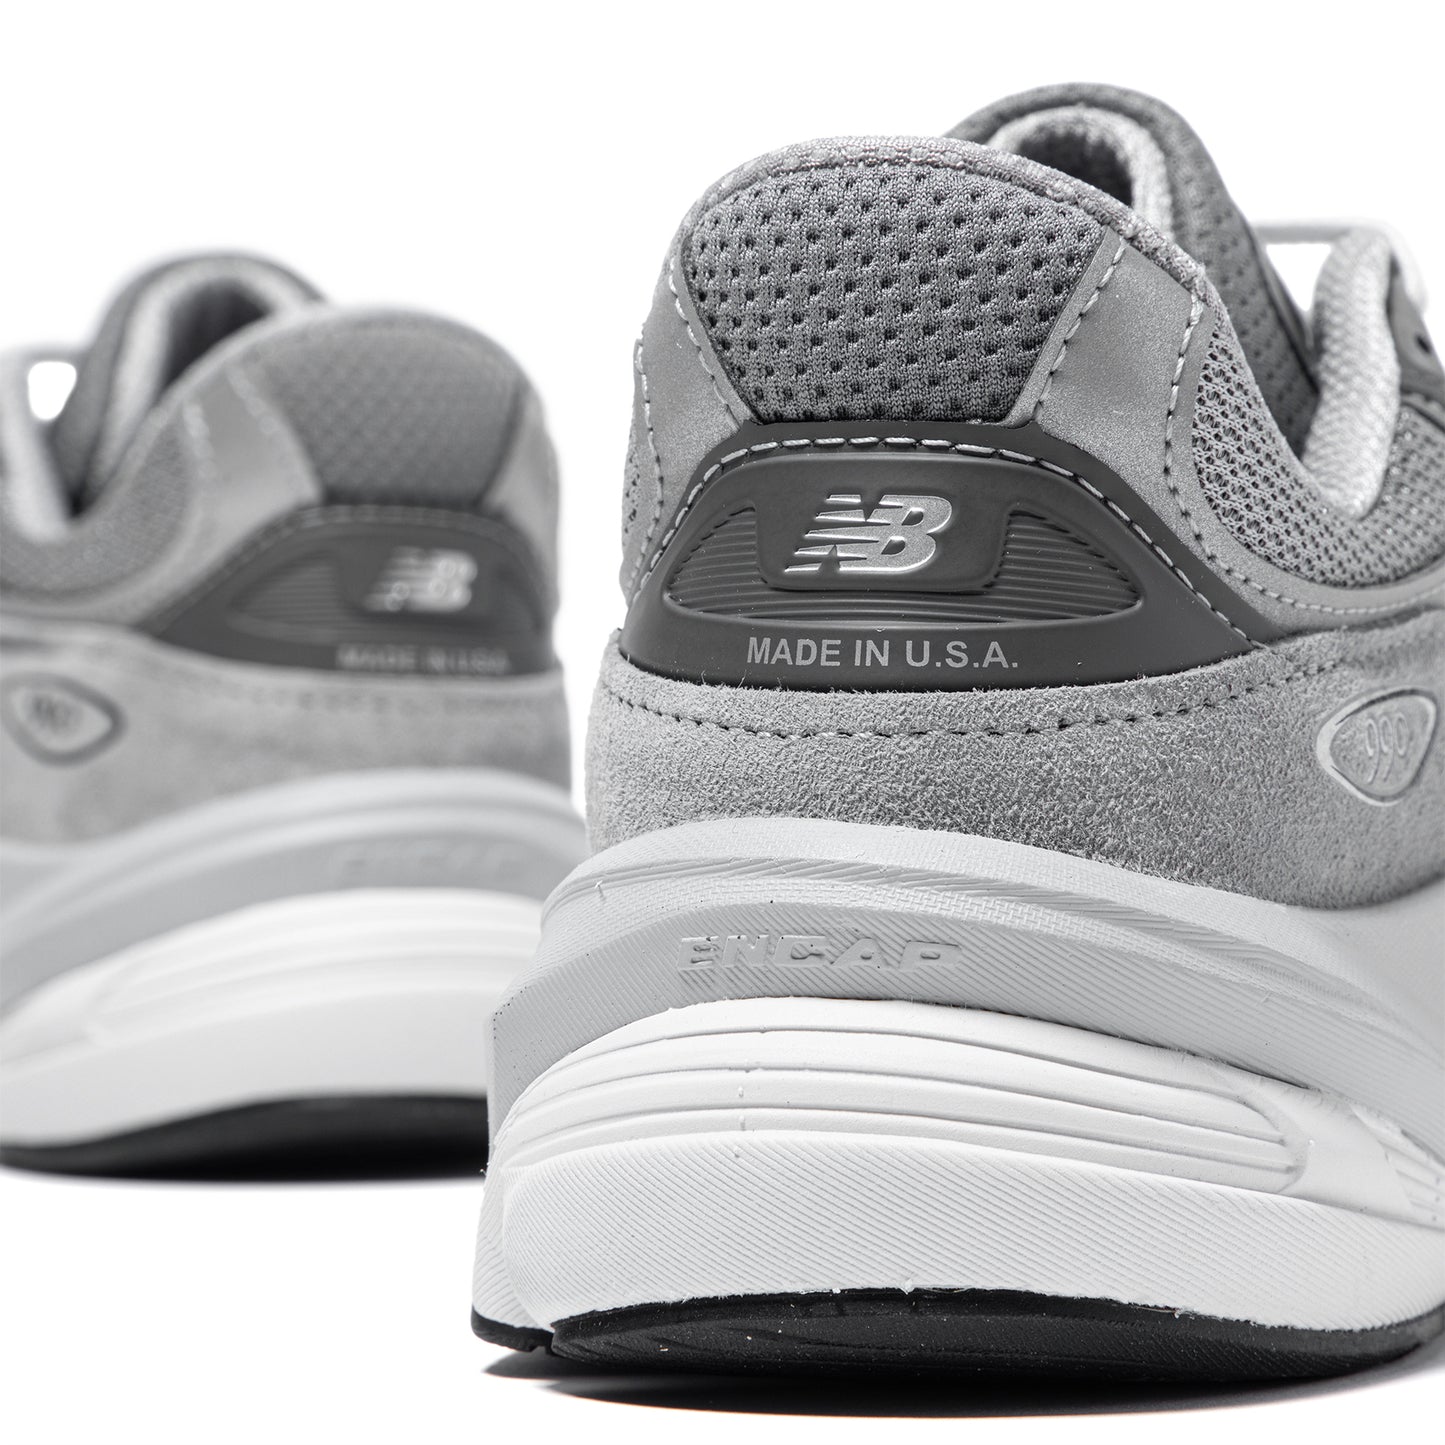 New Balance 990v6 (Grey)